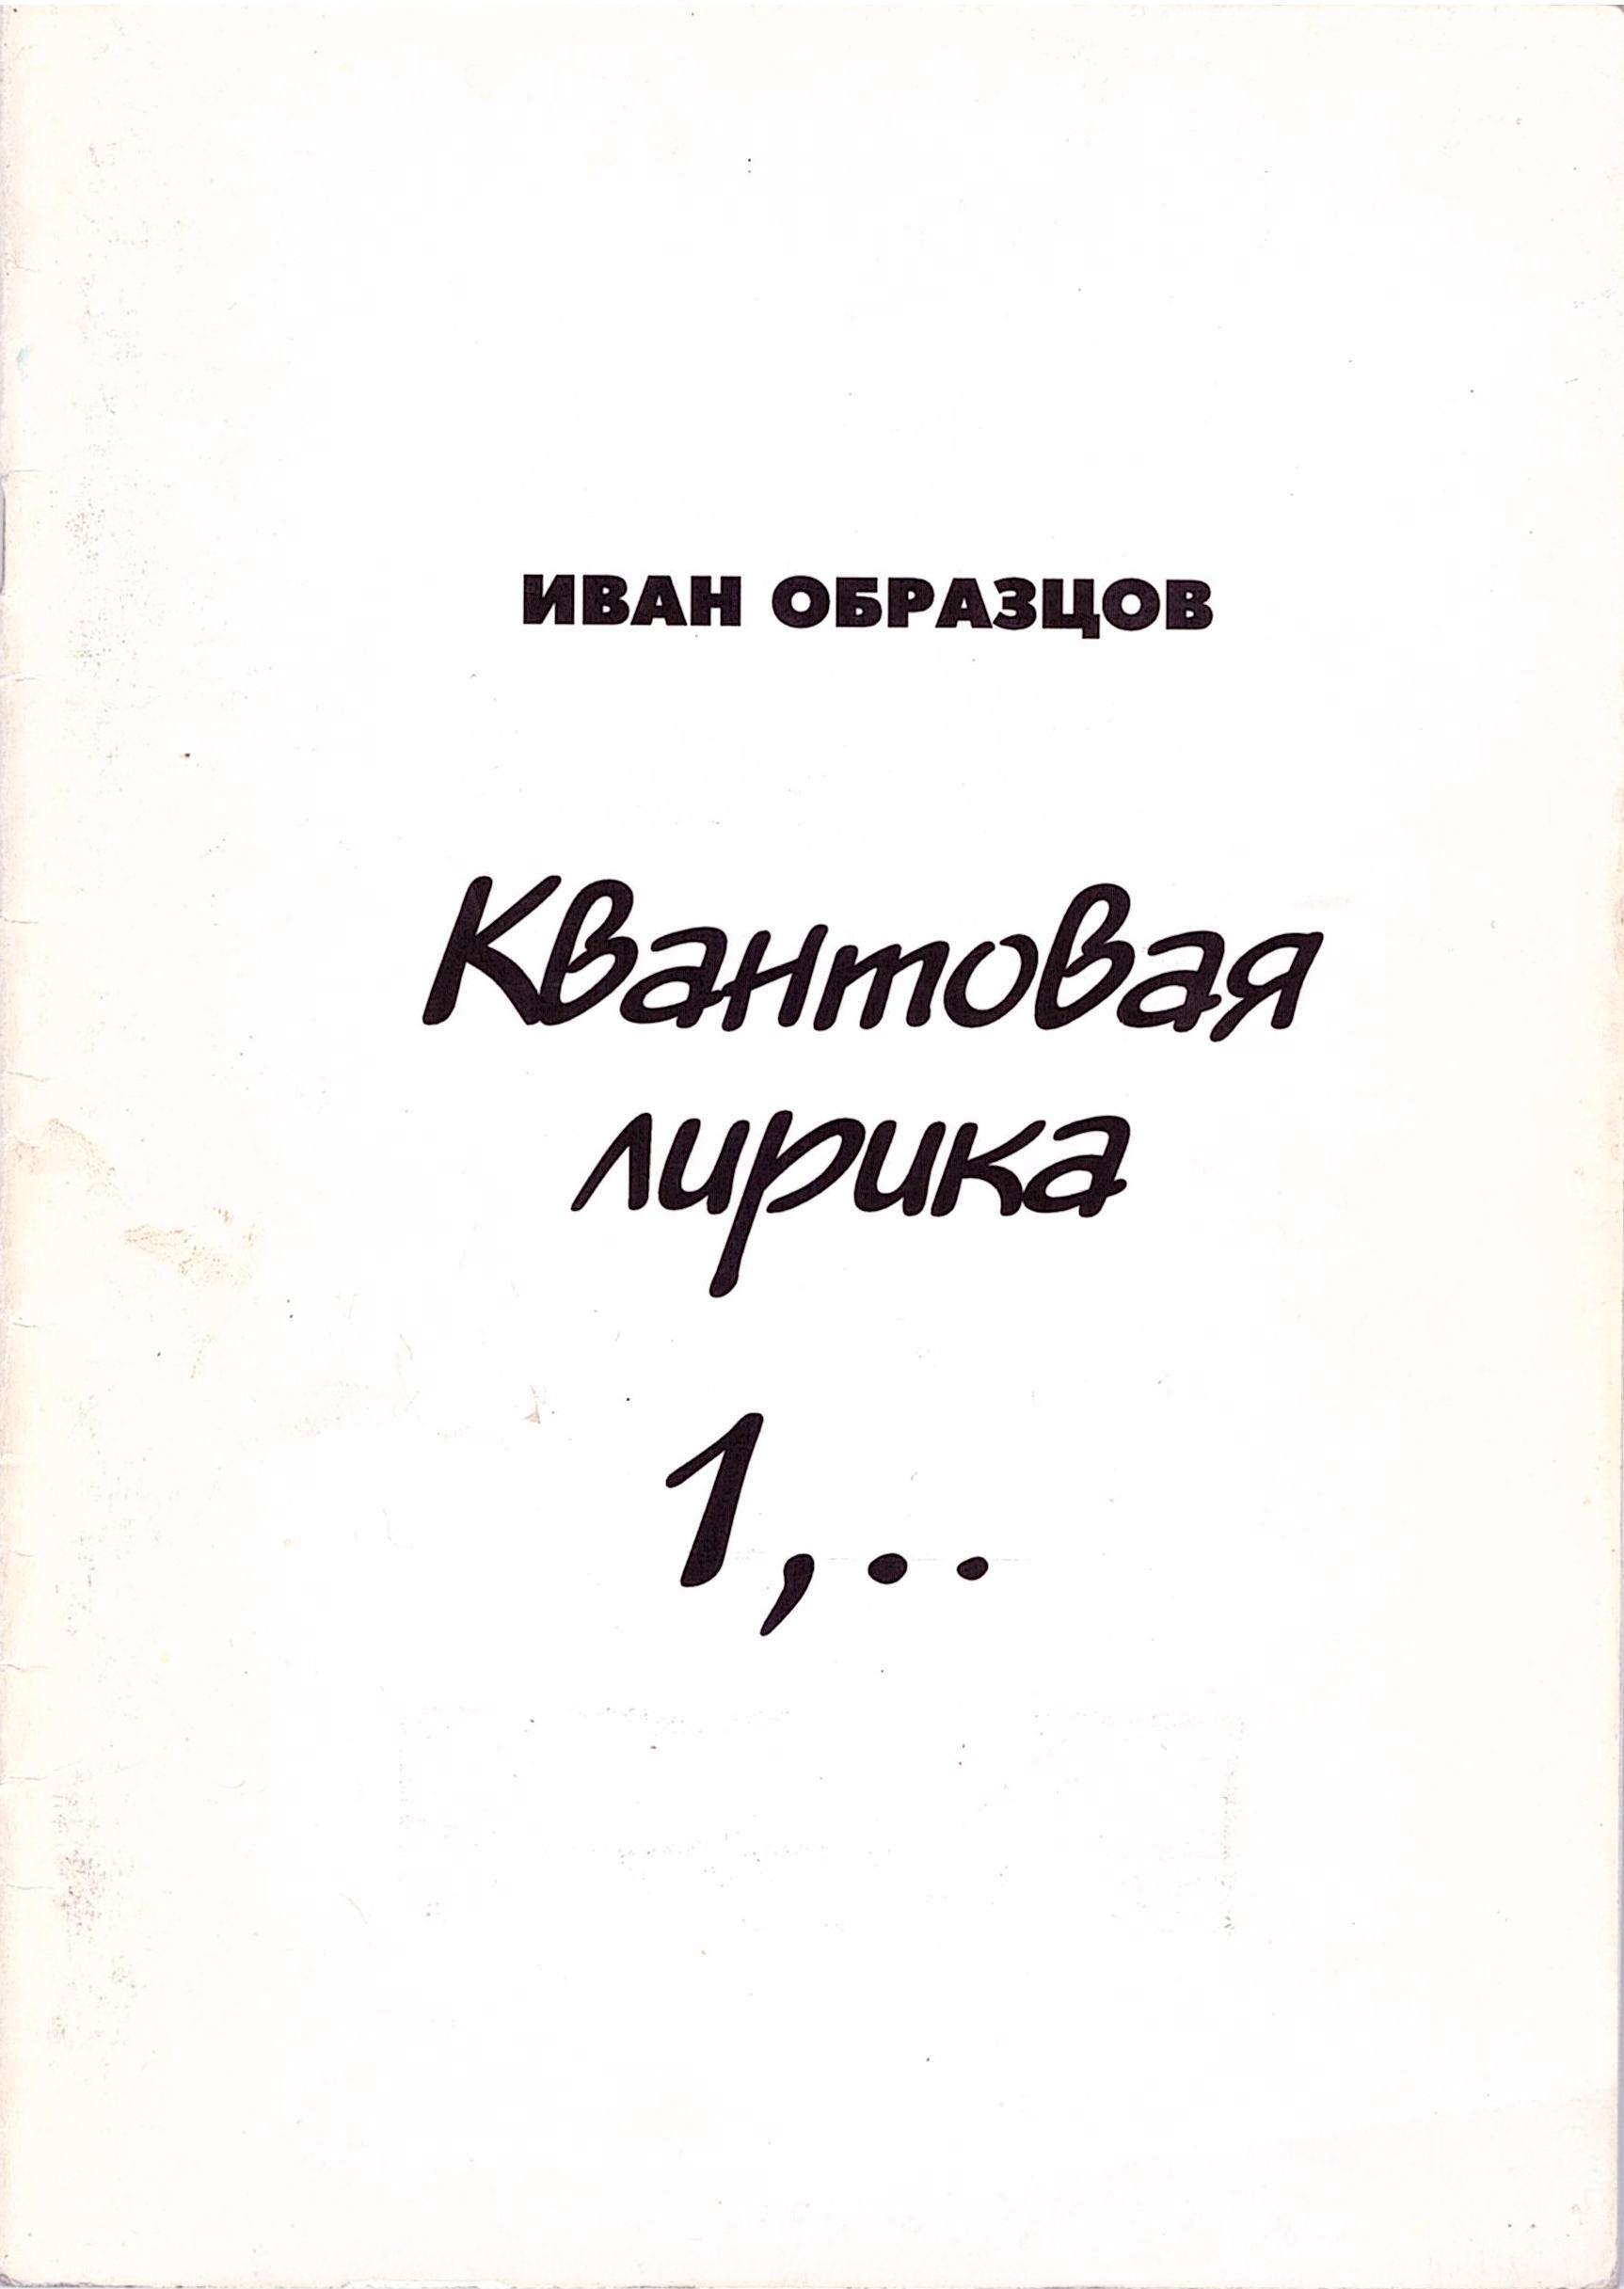 О дизайне книги "Квантовая лирика 1,.. " рассказывает автор Иван Образцов